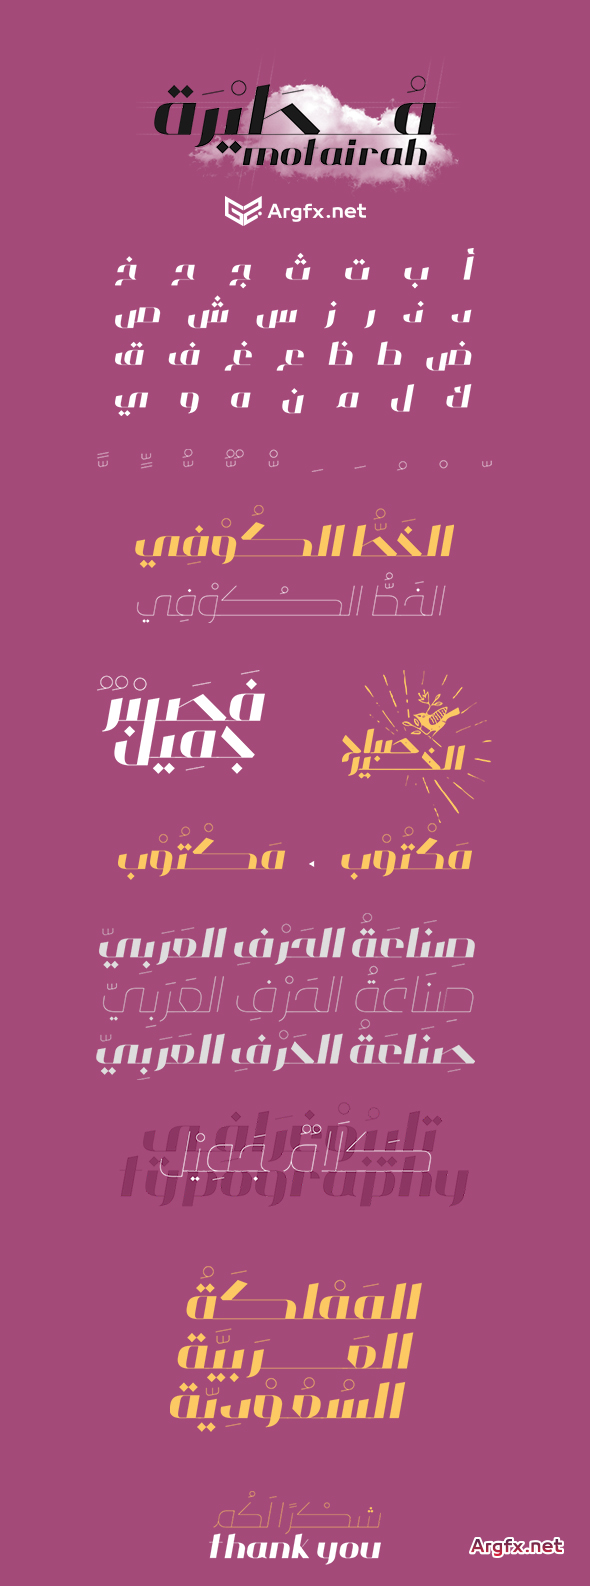 Motairah Typeface خط مطيرة